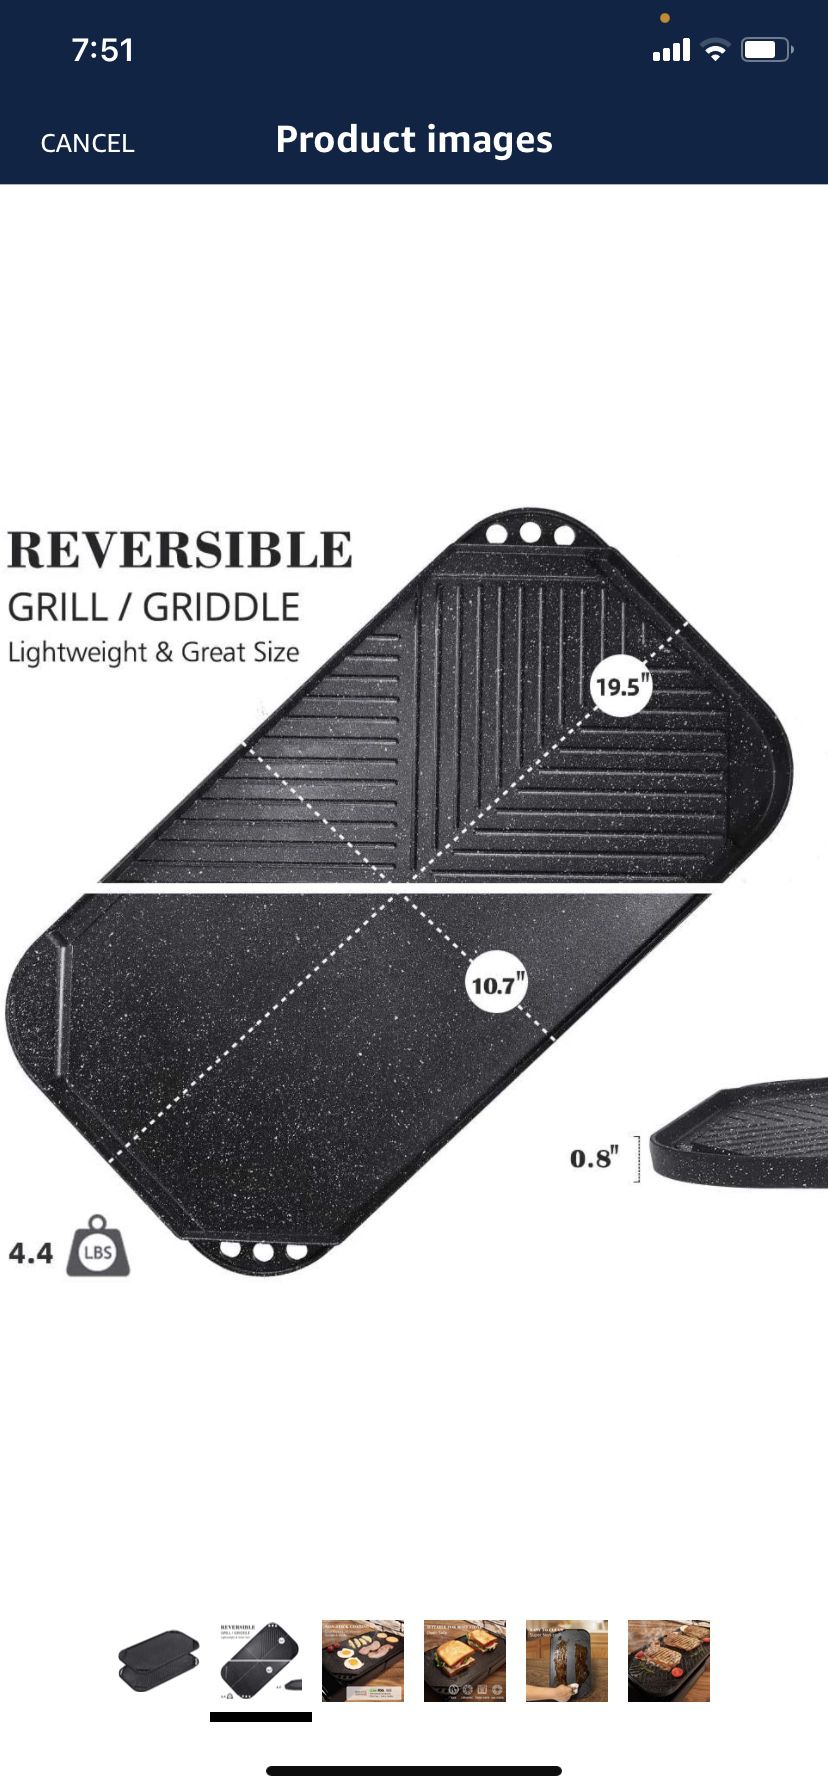 SENSARTE Nonstick Griddle Grill Pan, Pro-Grid Reversible Grill & Griddle  Pan, Two Burner Cast Aluminum Griddle, Portable for Indoor Stovetop or